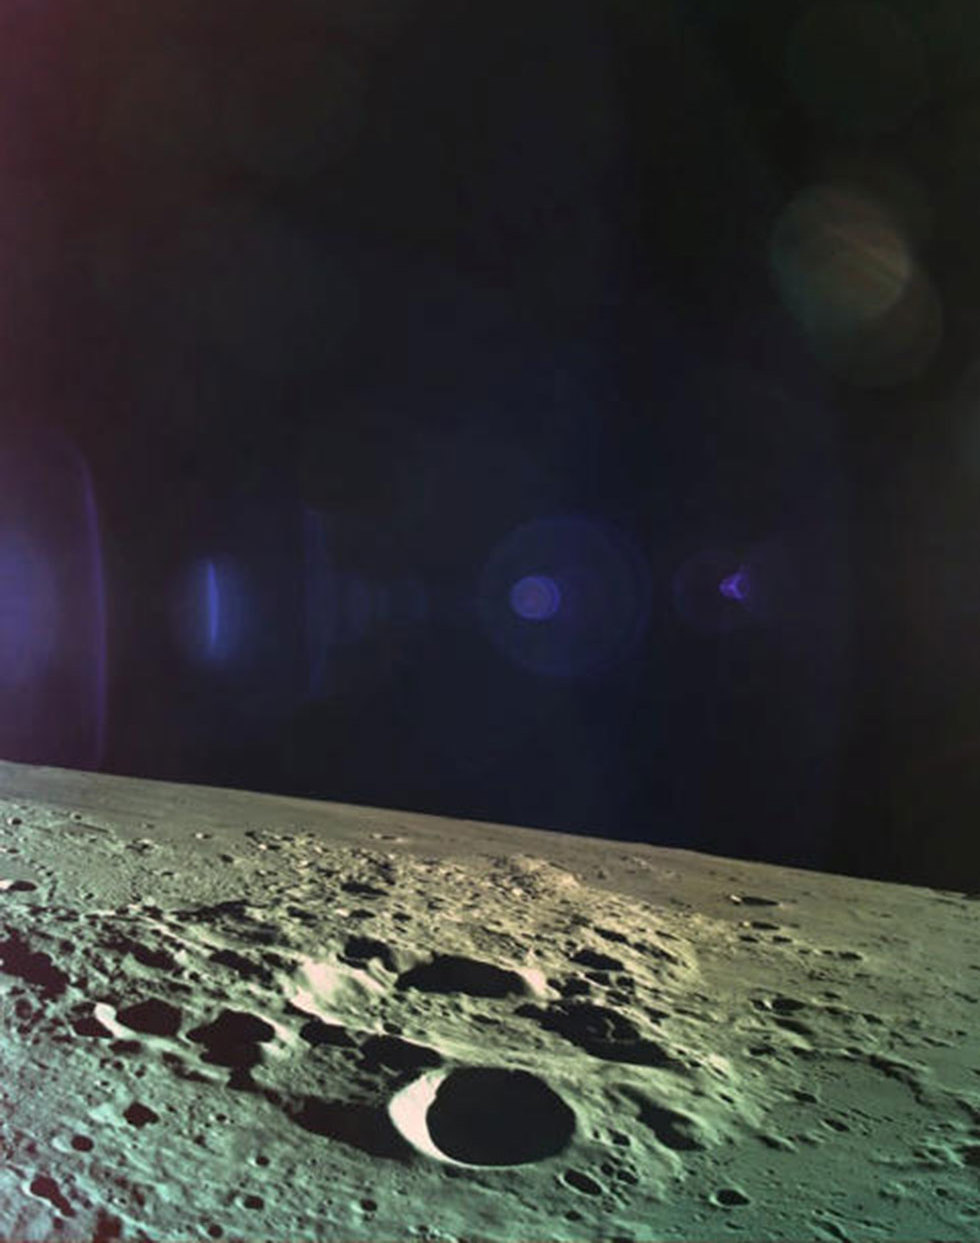 הירח כפי שצולם מהחללית בראשית (צילום: רויטרס)